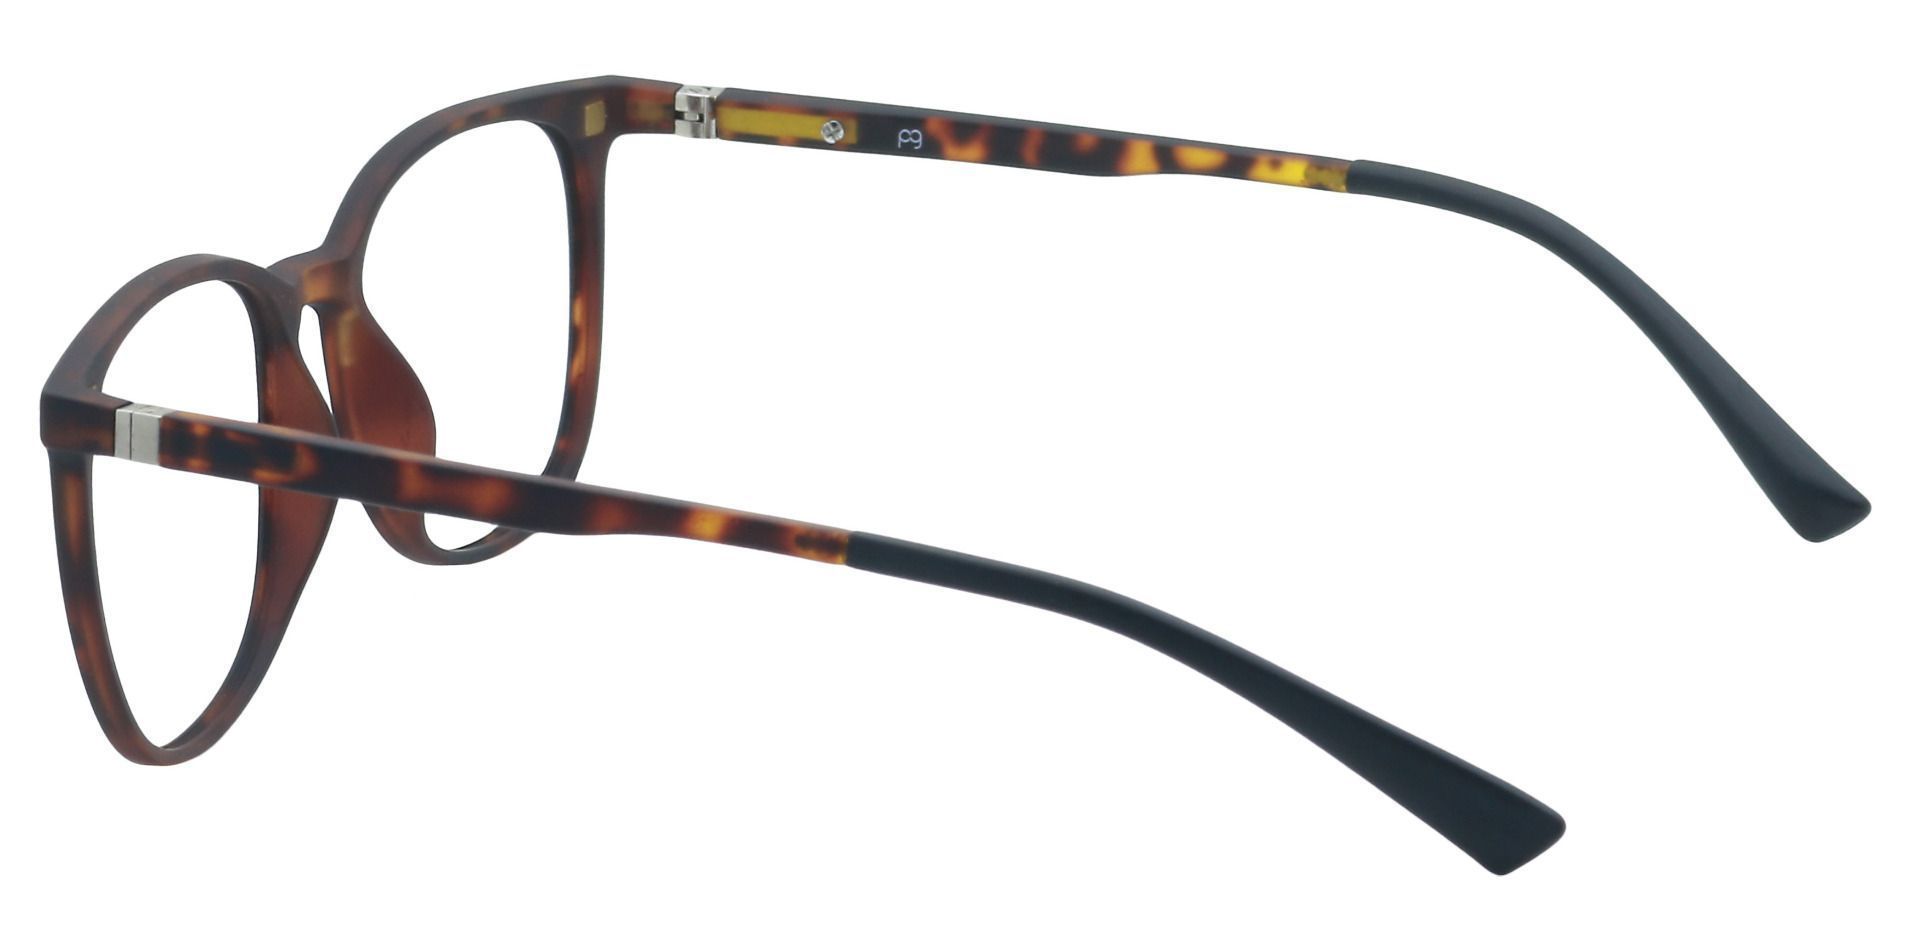 Alfie Square Progressive Glasses - Tortoise